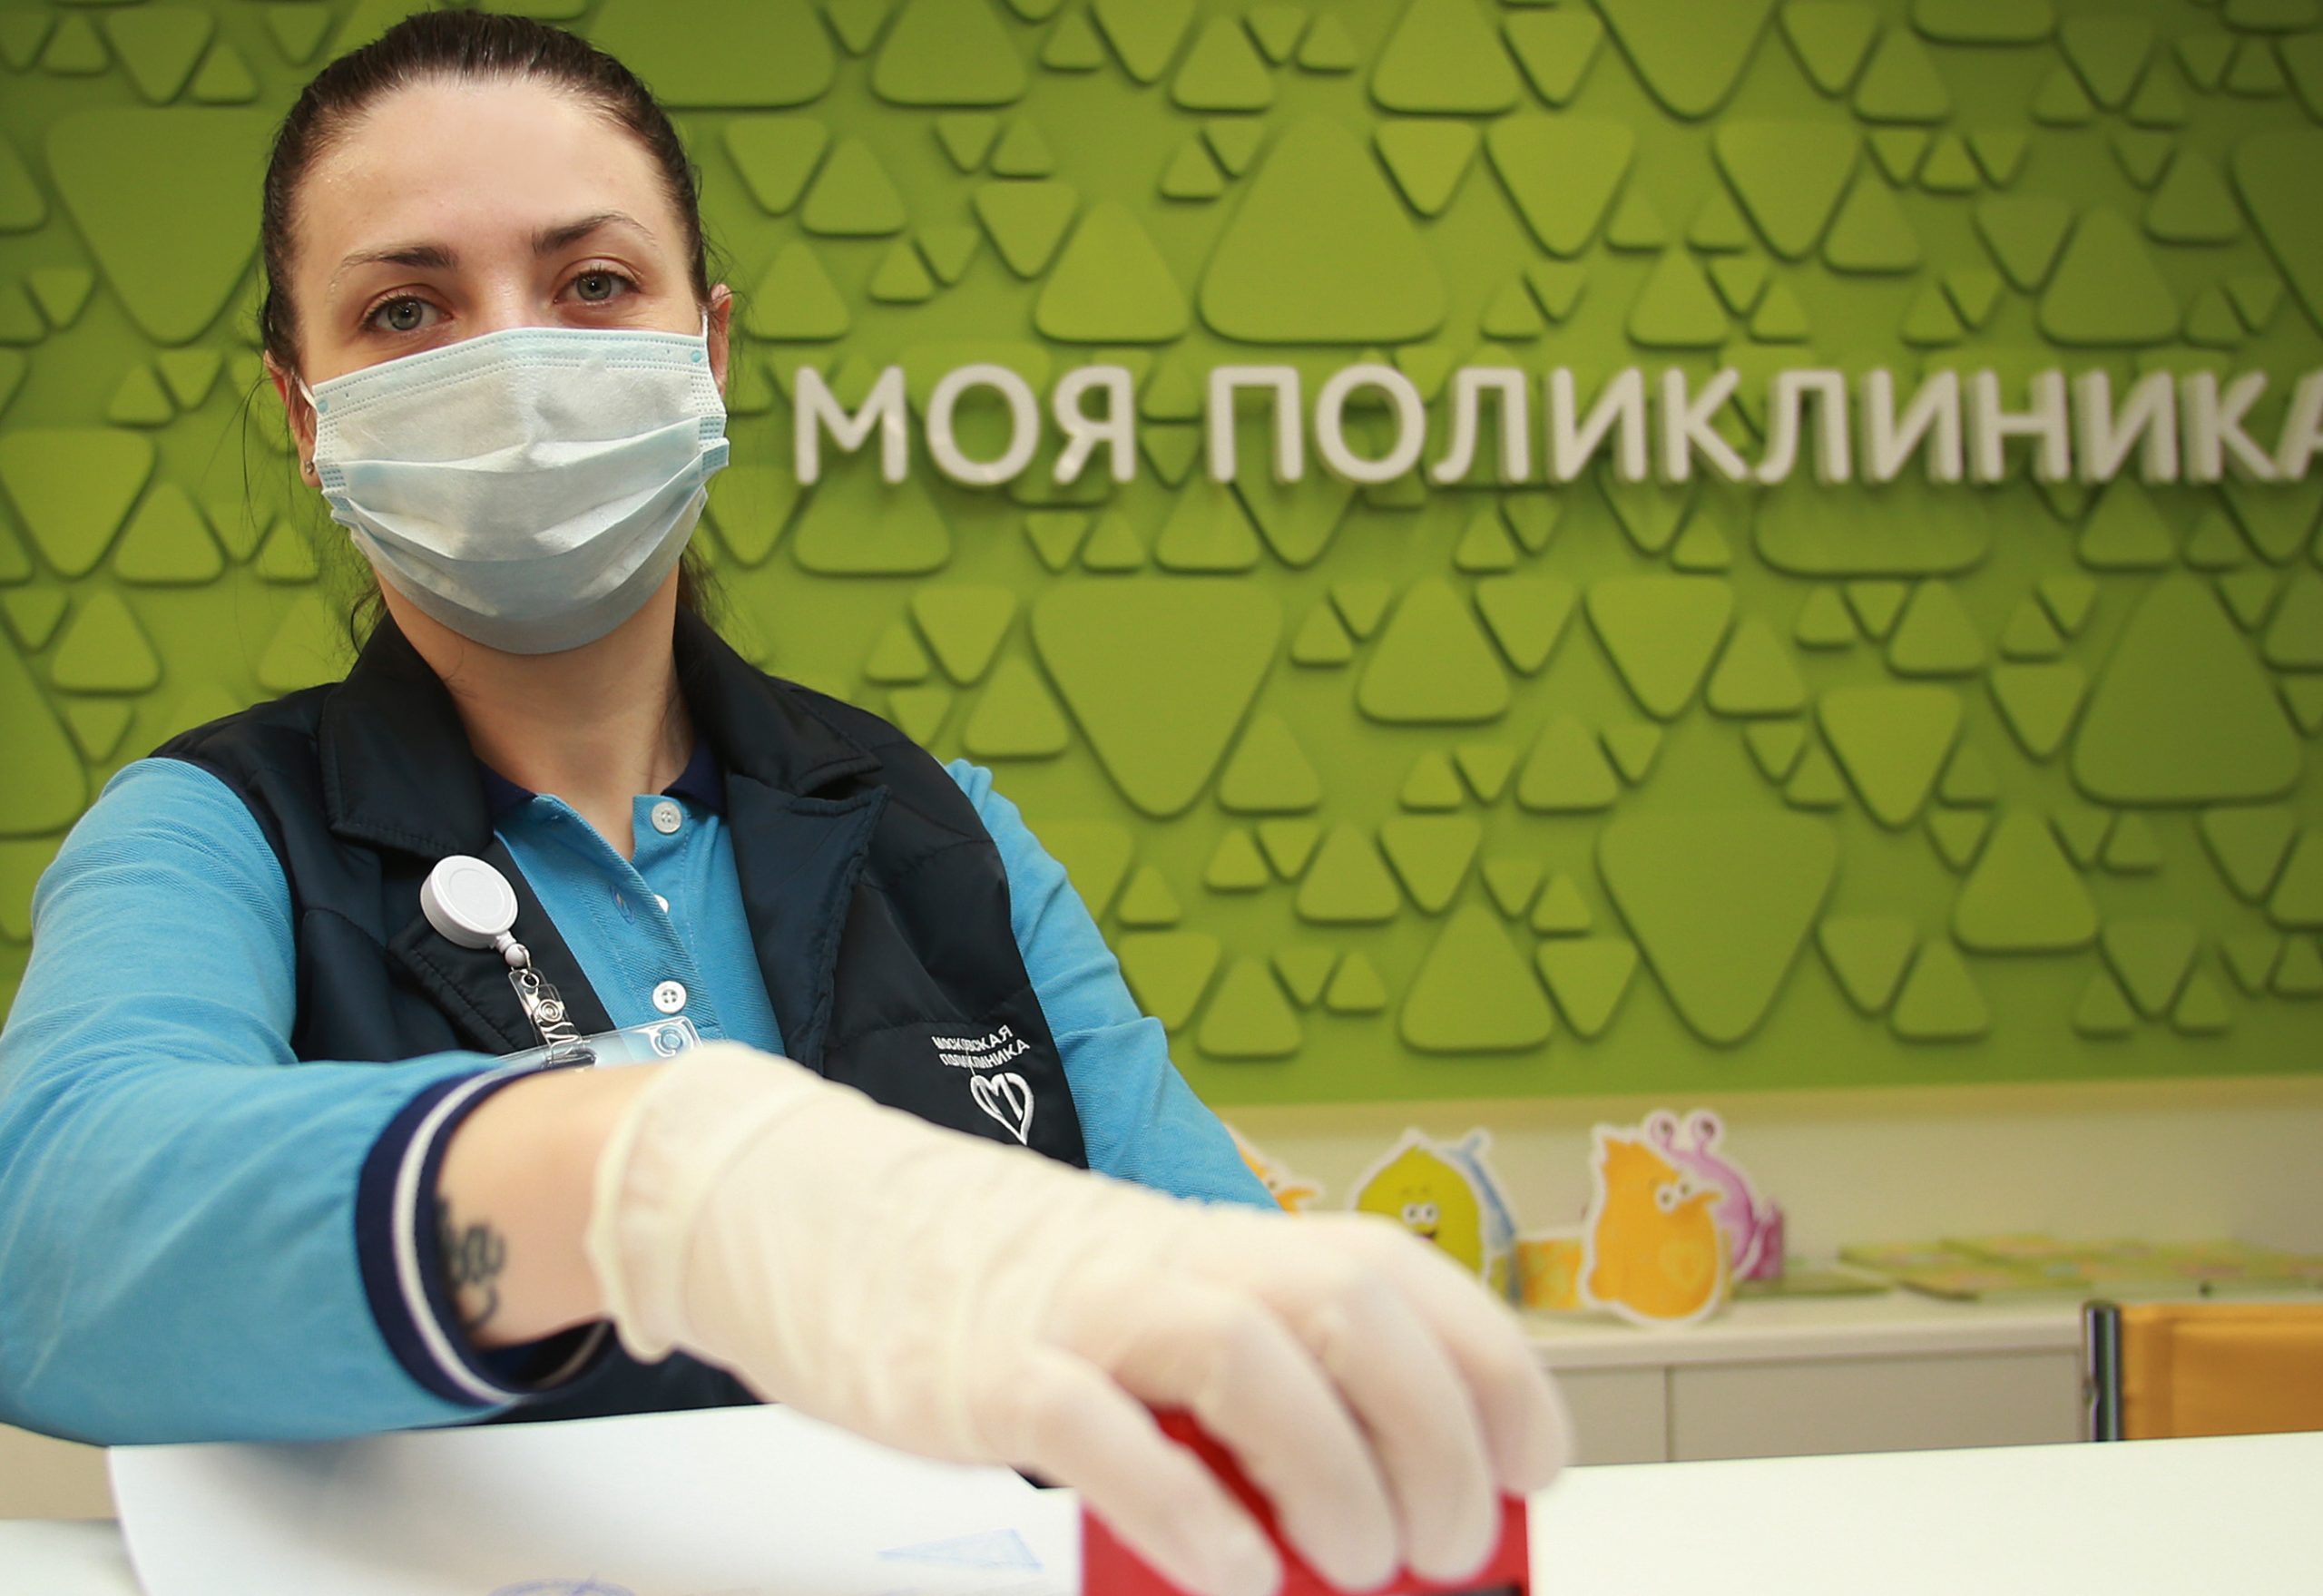 Новый московский стандарт поликлиник внедрили в столице. Фото: Наталия Нечаева, «Вечерняя Москва»